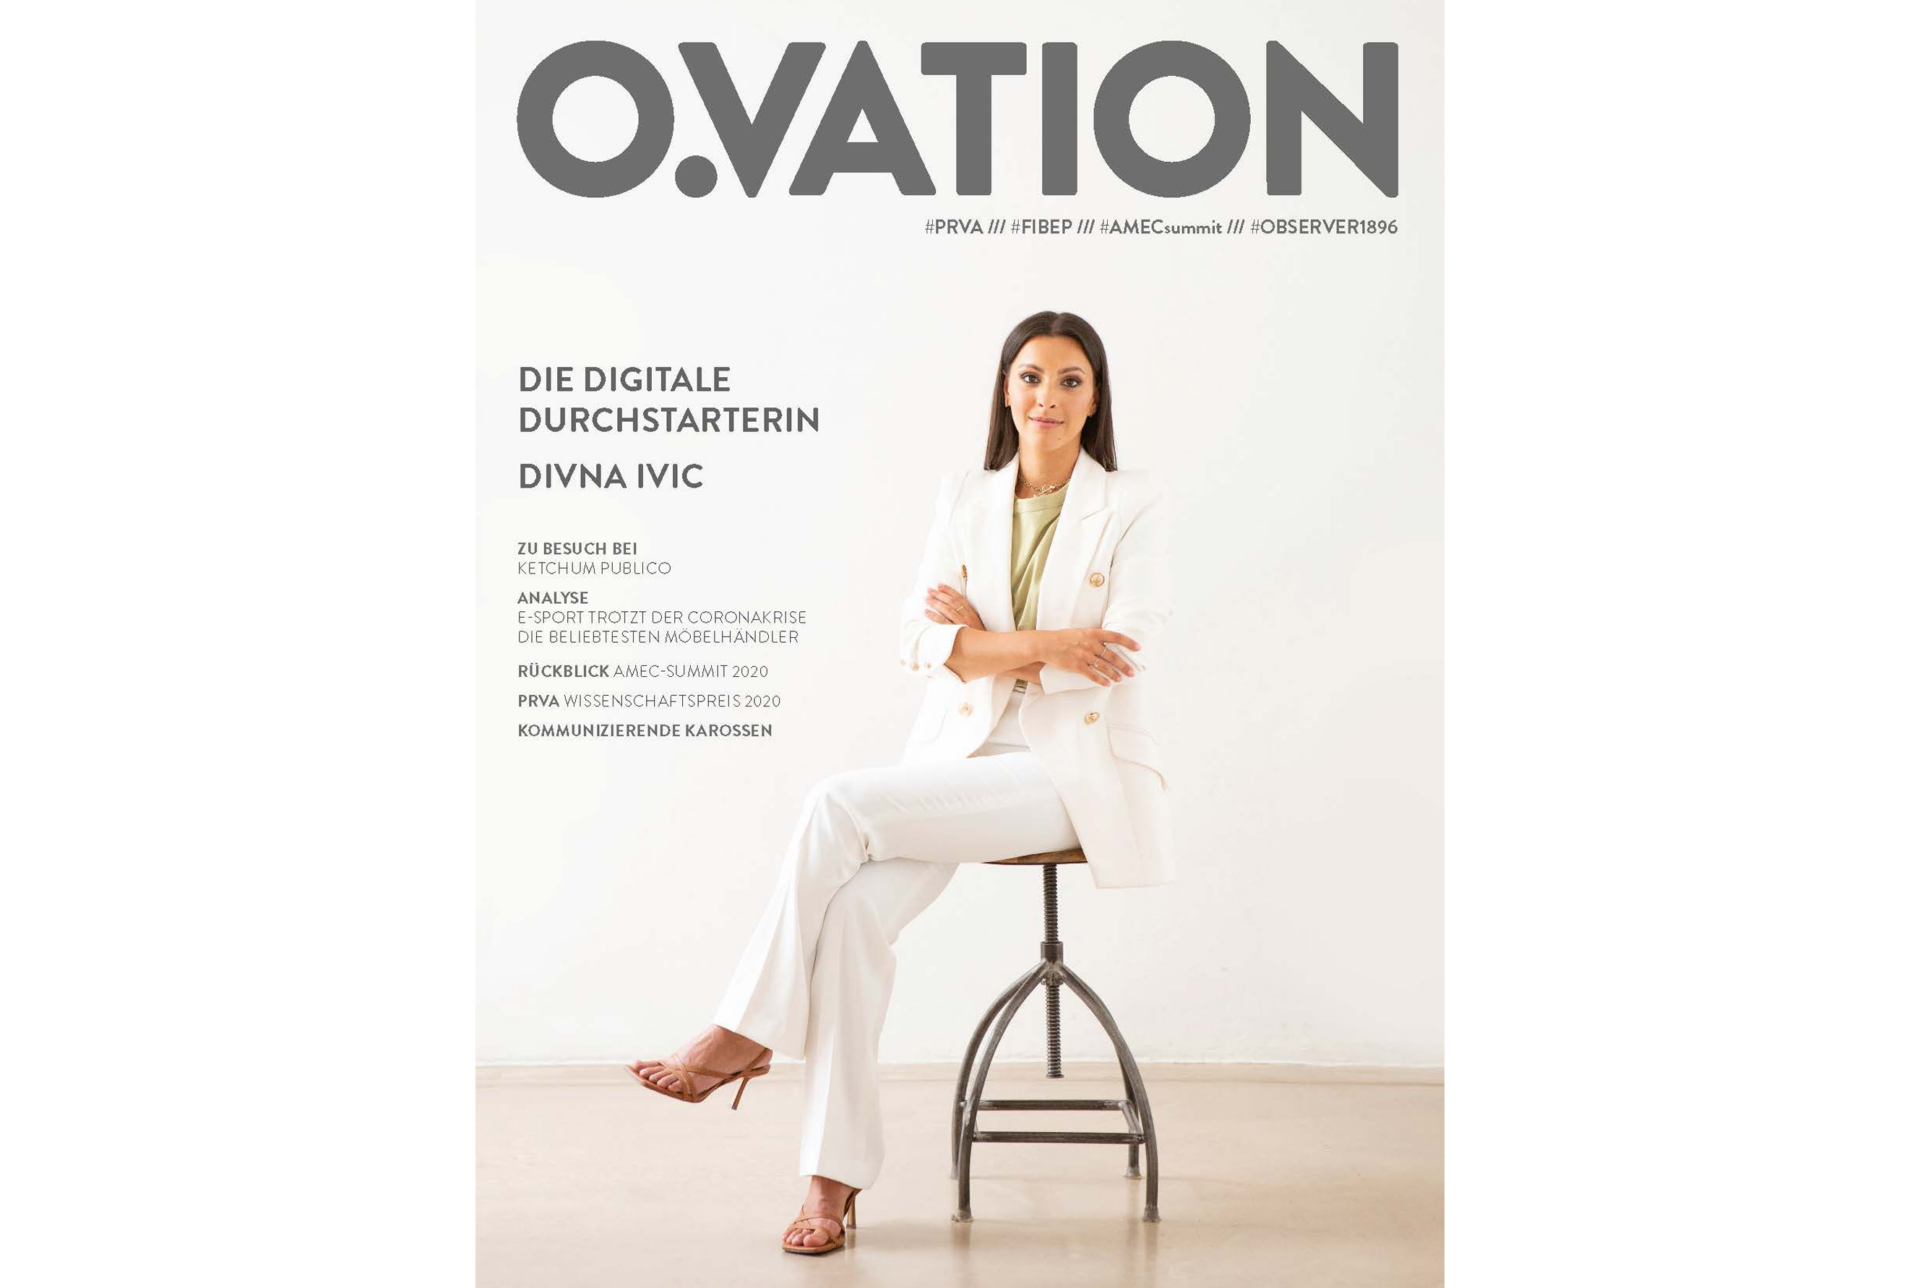 Divna Ivic auf der Titelseite des O.VATION Magazins